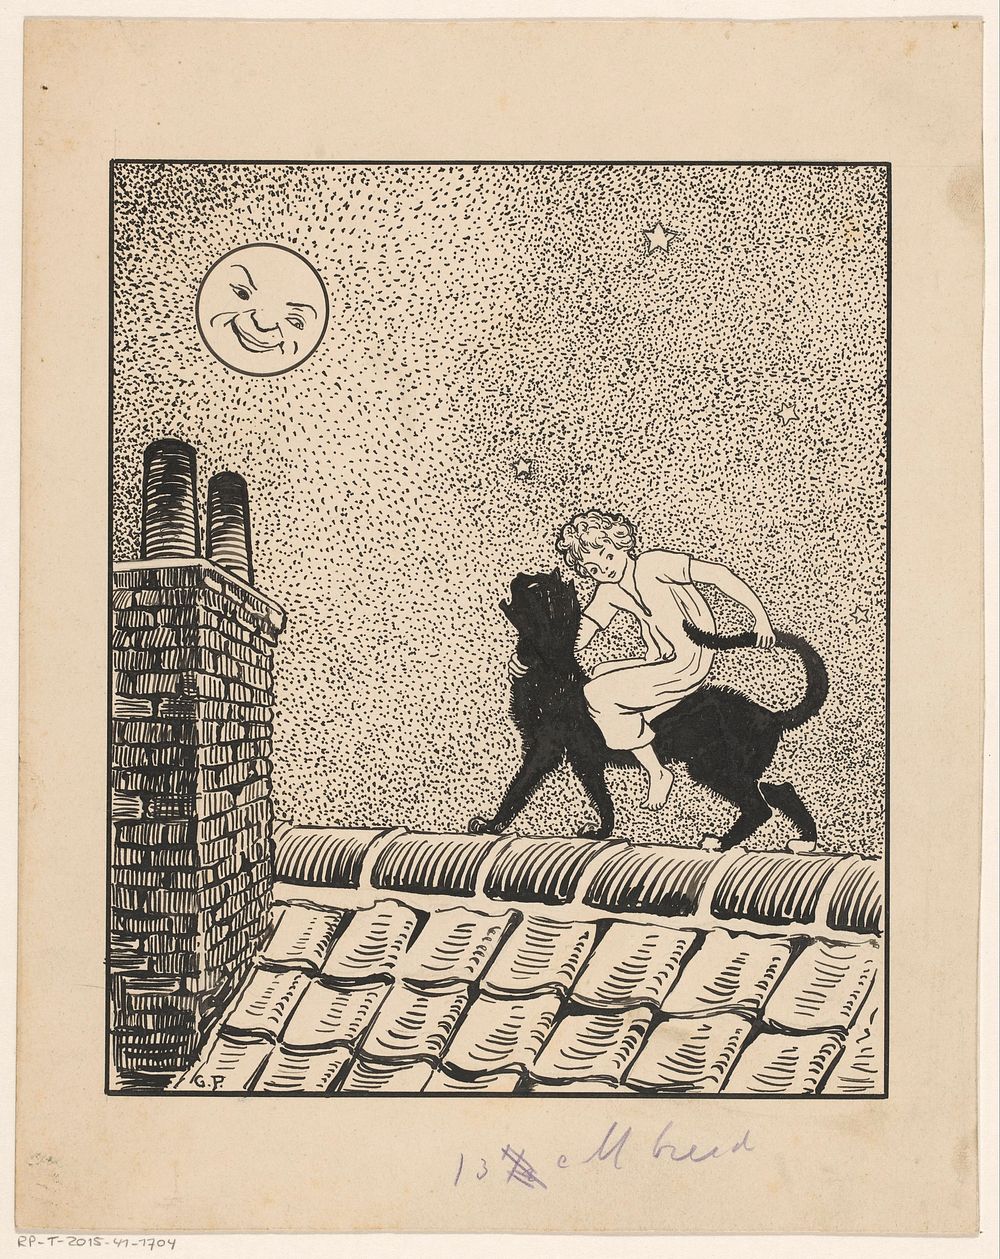 Meisje rijdt op een kat over de daken (1887 - 1911) by Gust van de Wall Perné